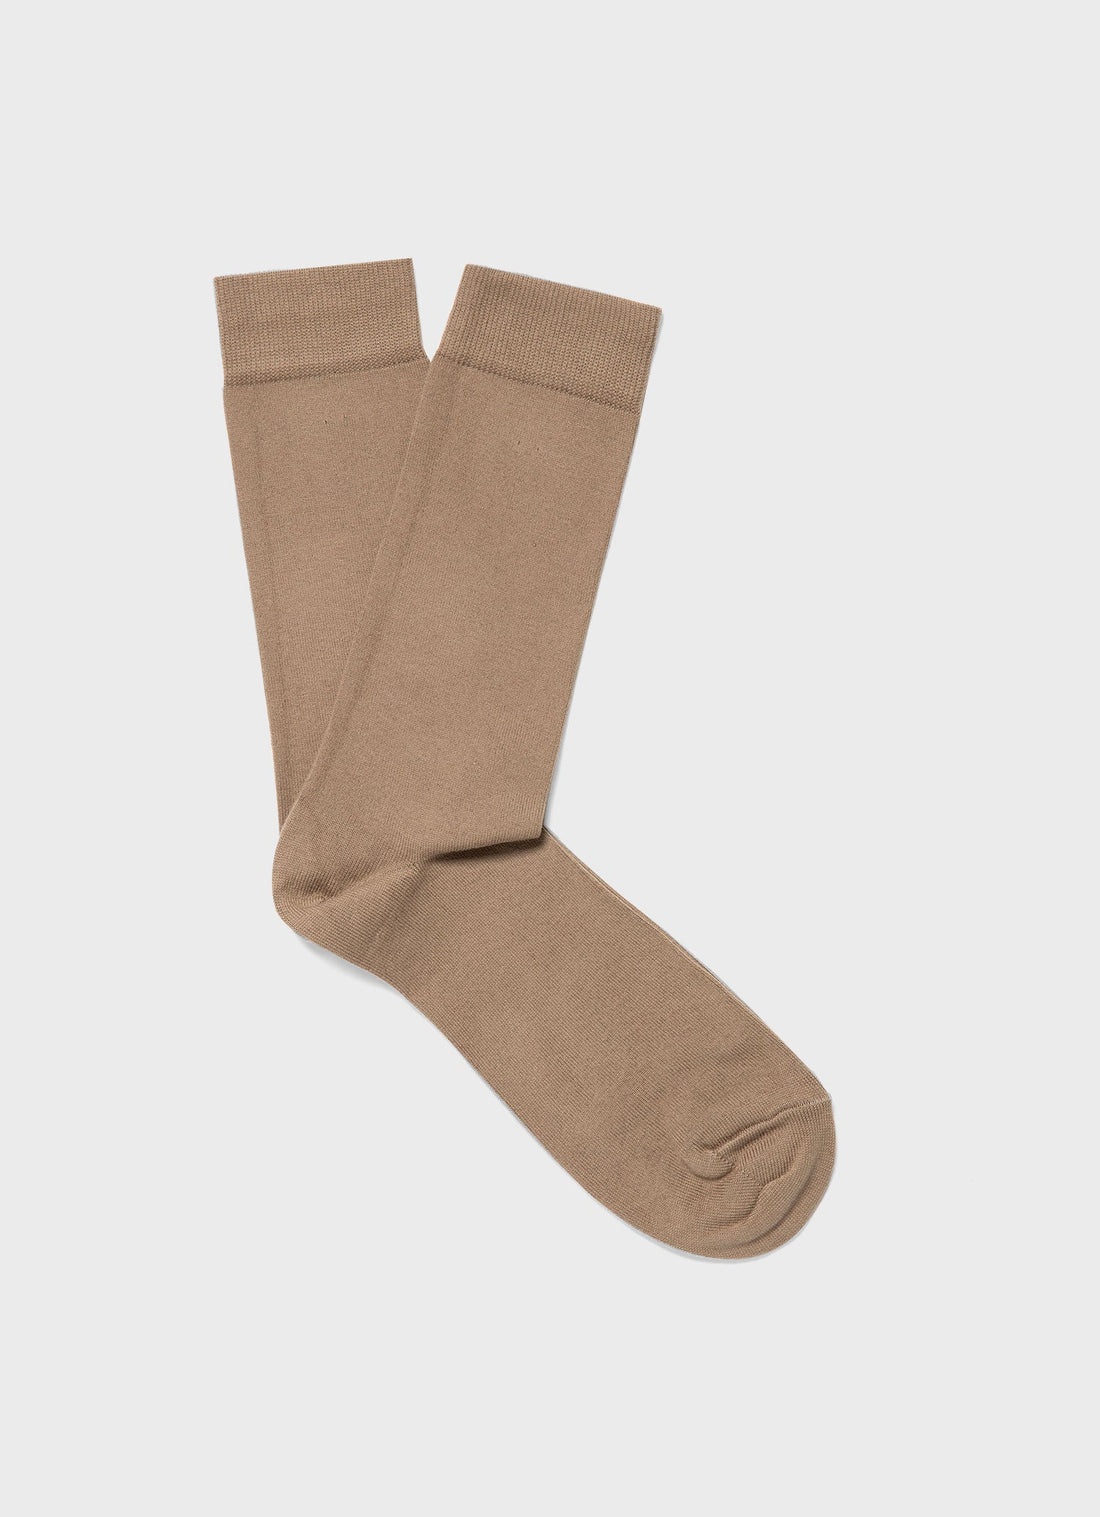 Men's Cotton Socks in Dark Stone